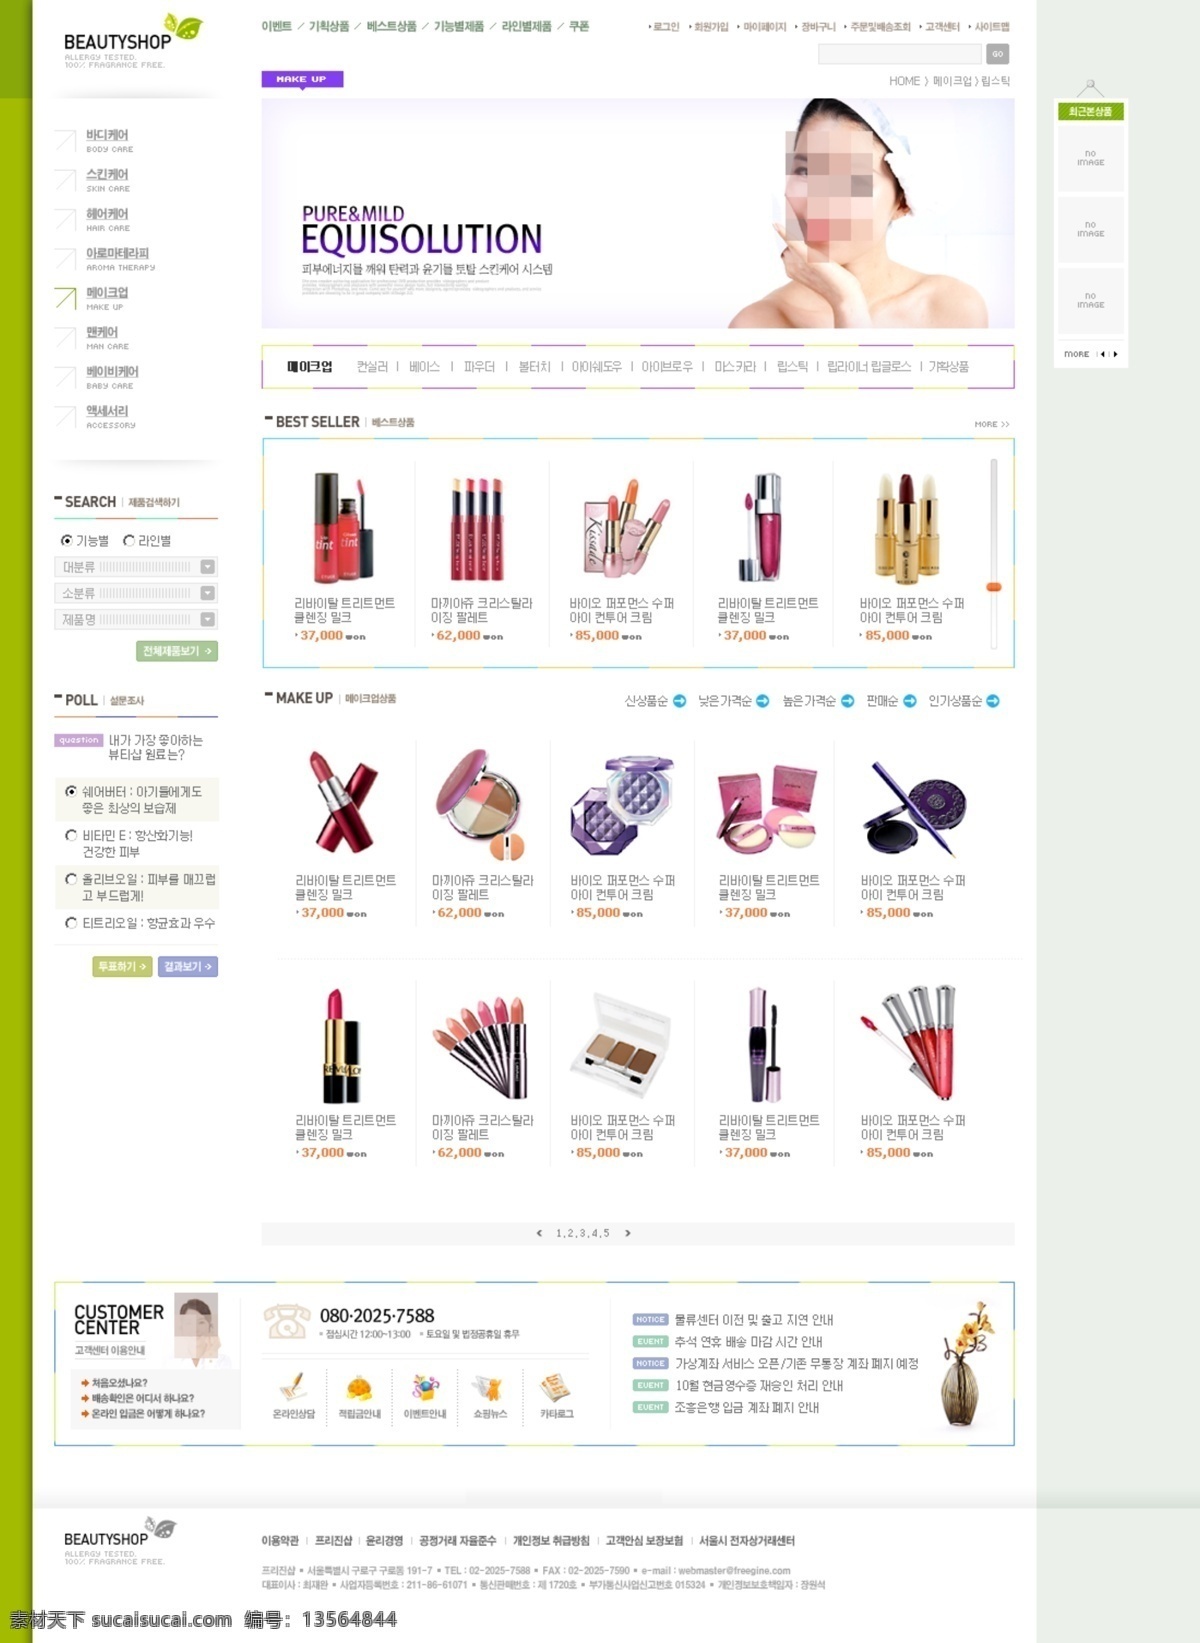 韩国模板 韩国网页模版 化妆品 卡通网页设计 模版 网页模板 网页模版 网页设计 网页设计模版 漂亮 源文件 网页素材